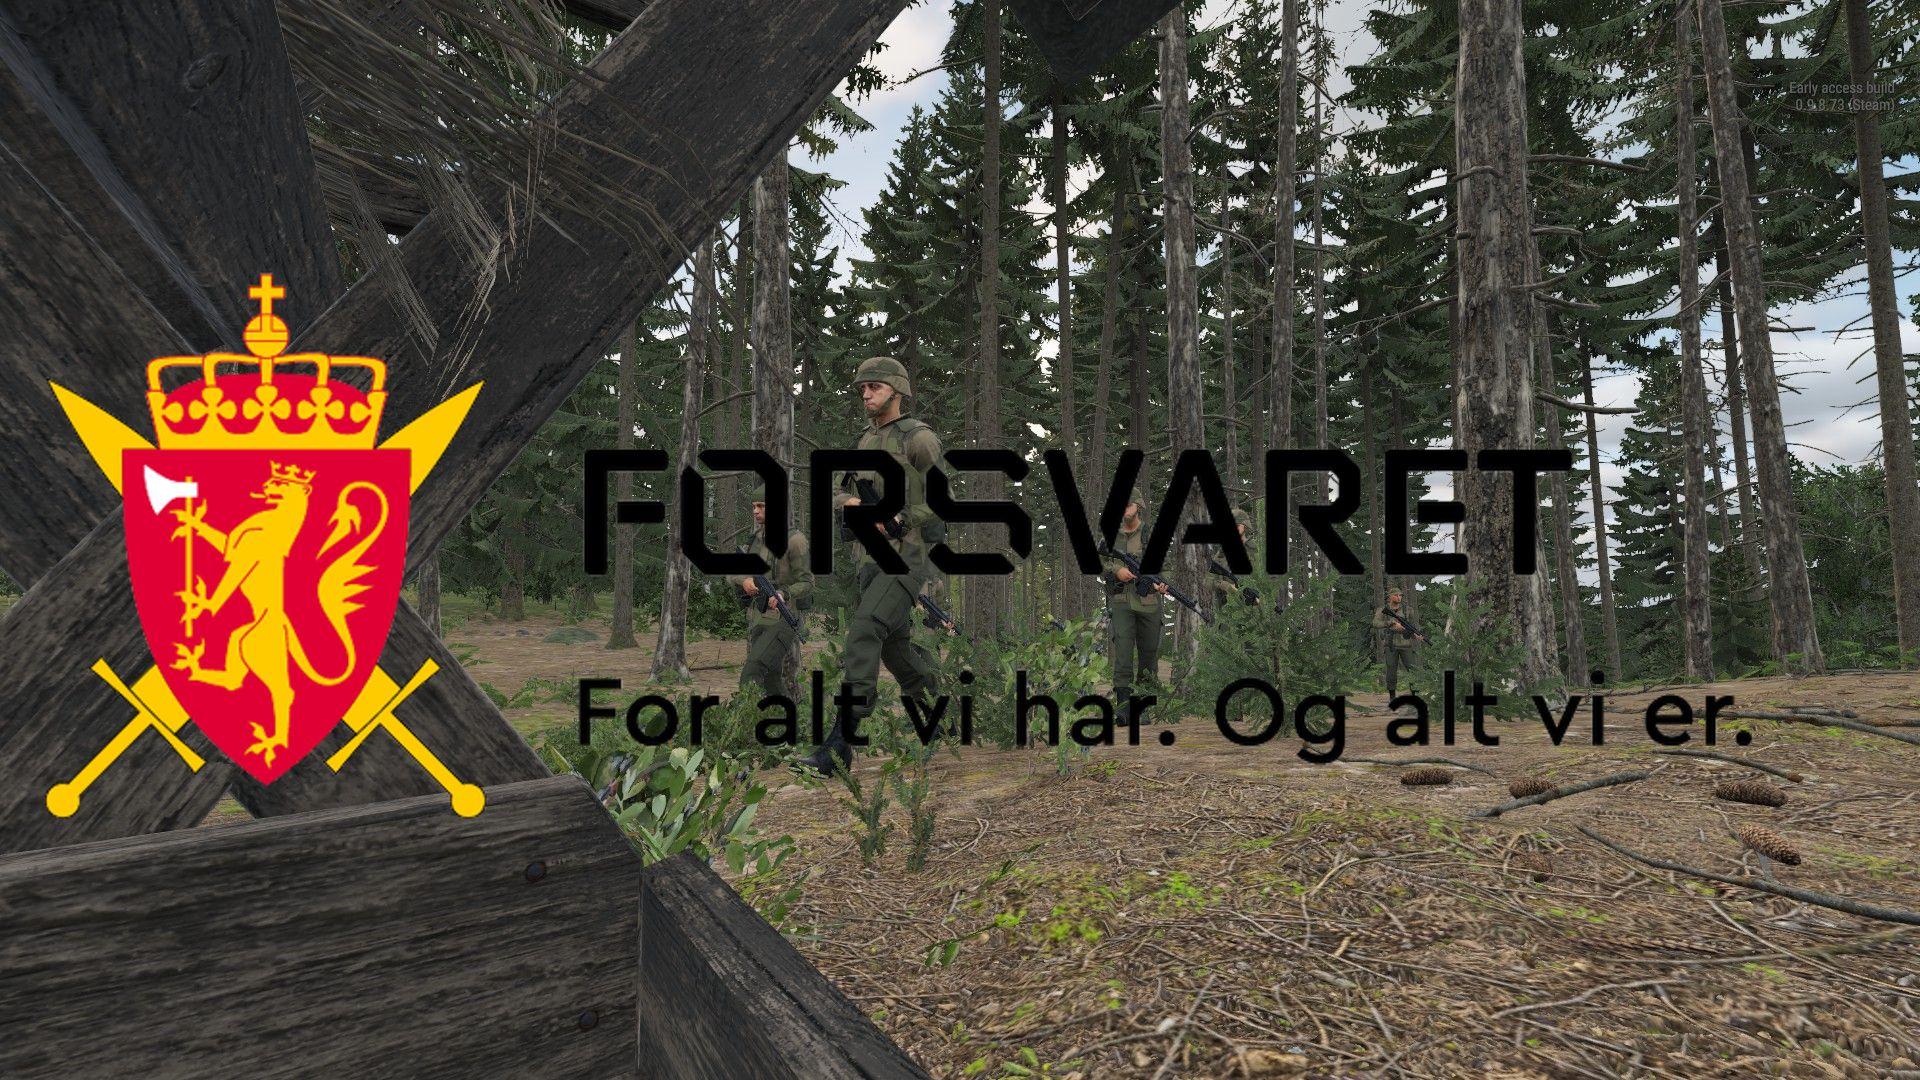 Forsvaret. Norwegian military